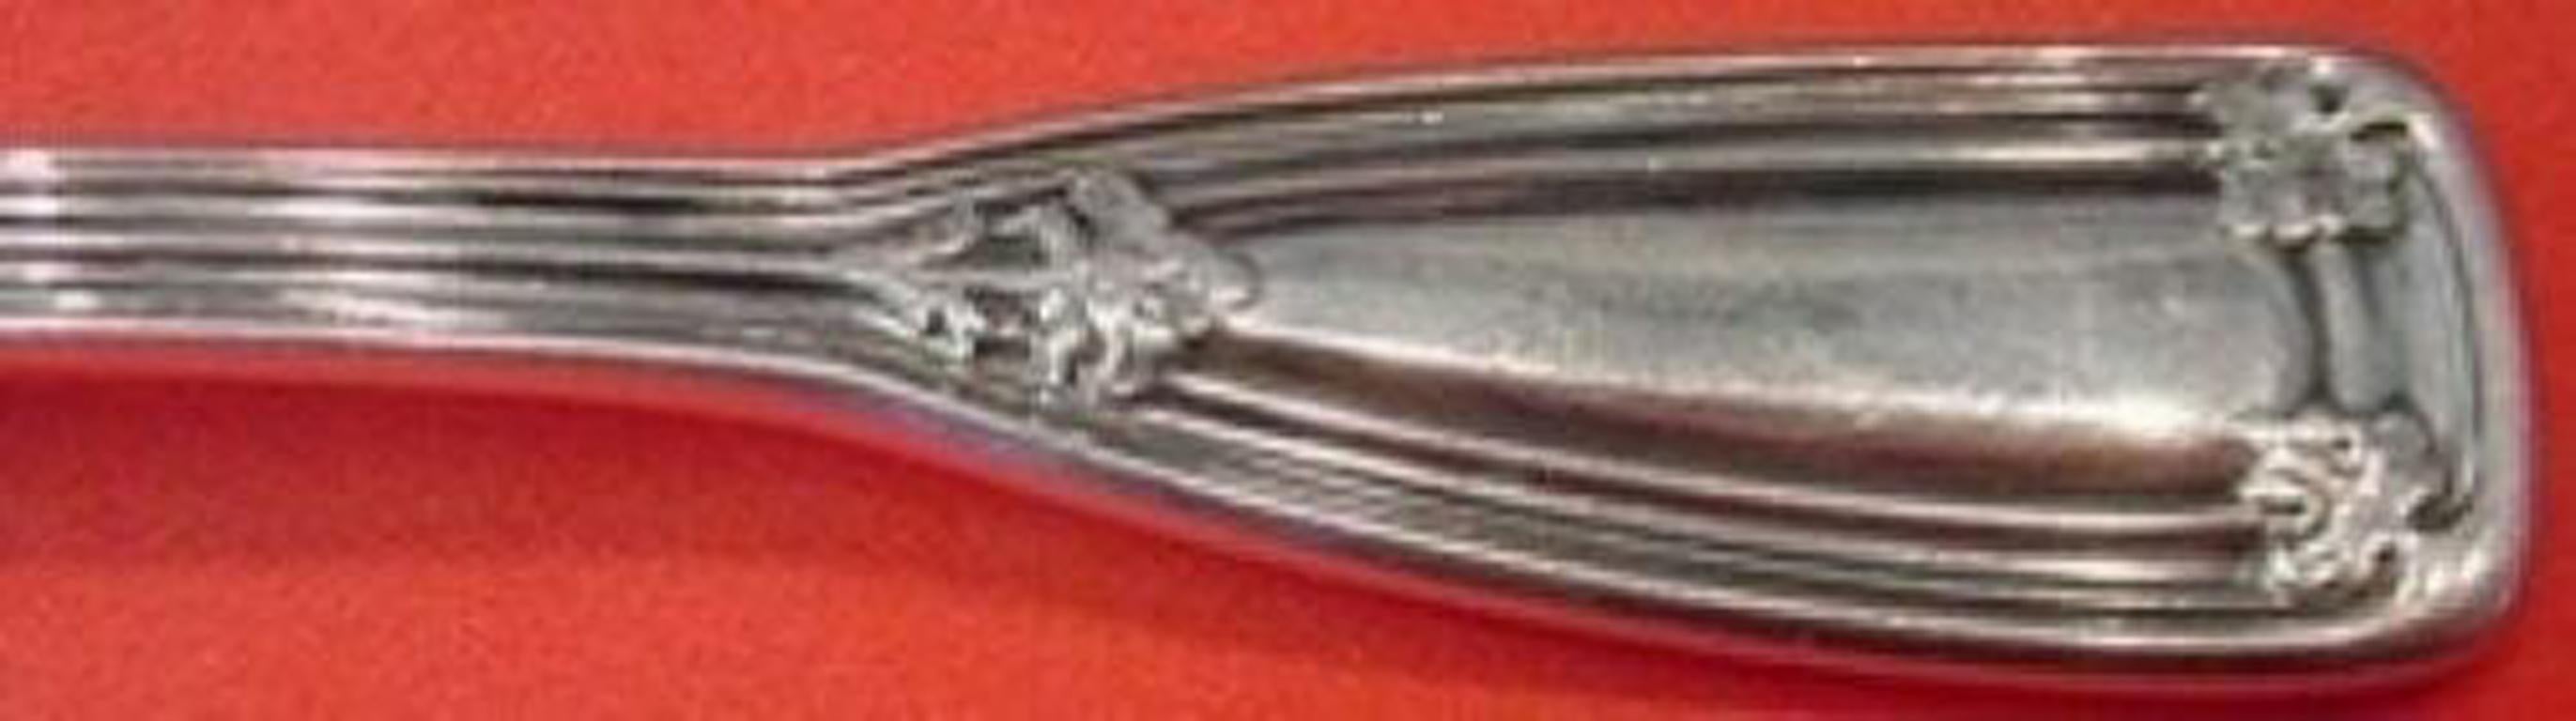 Sterling silver demitasse spoon 4 1/8